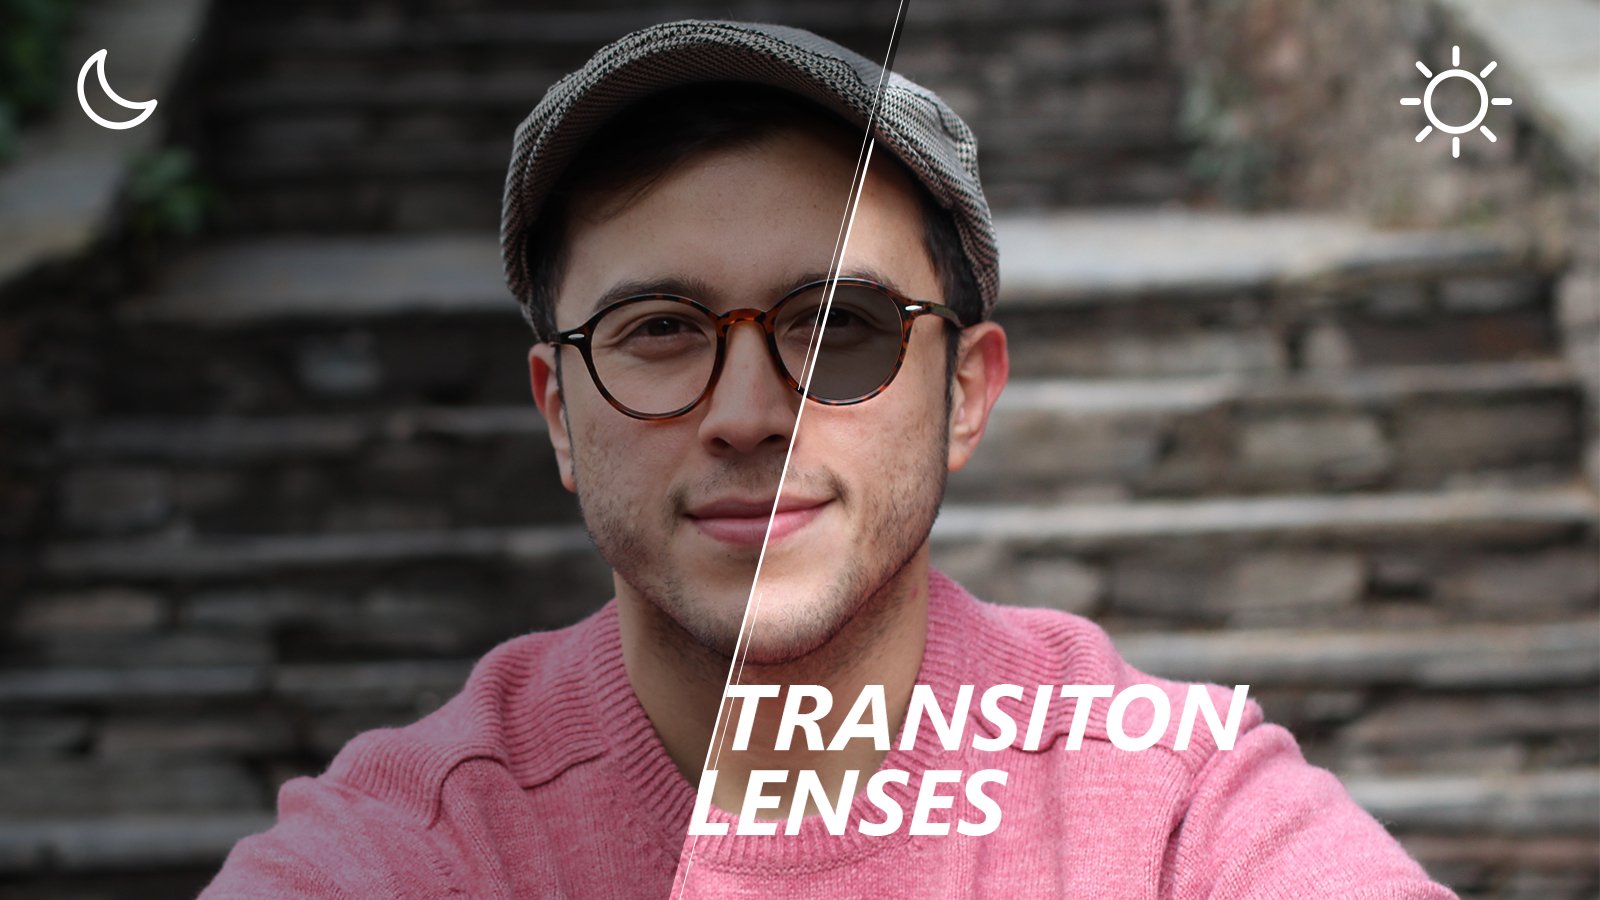 Transition lenses